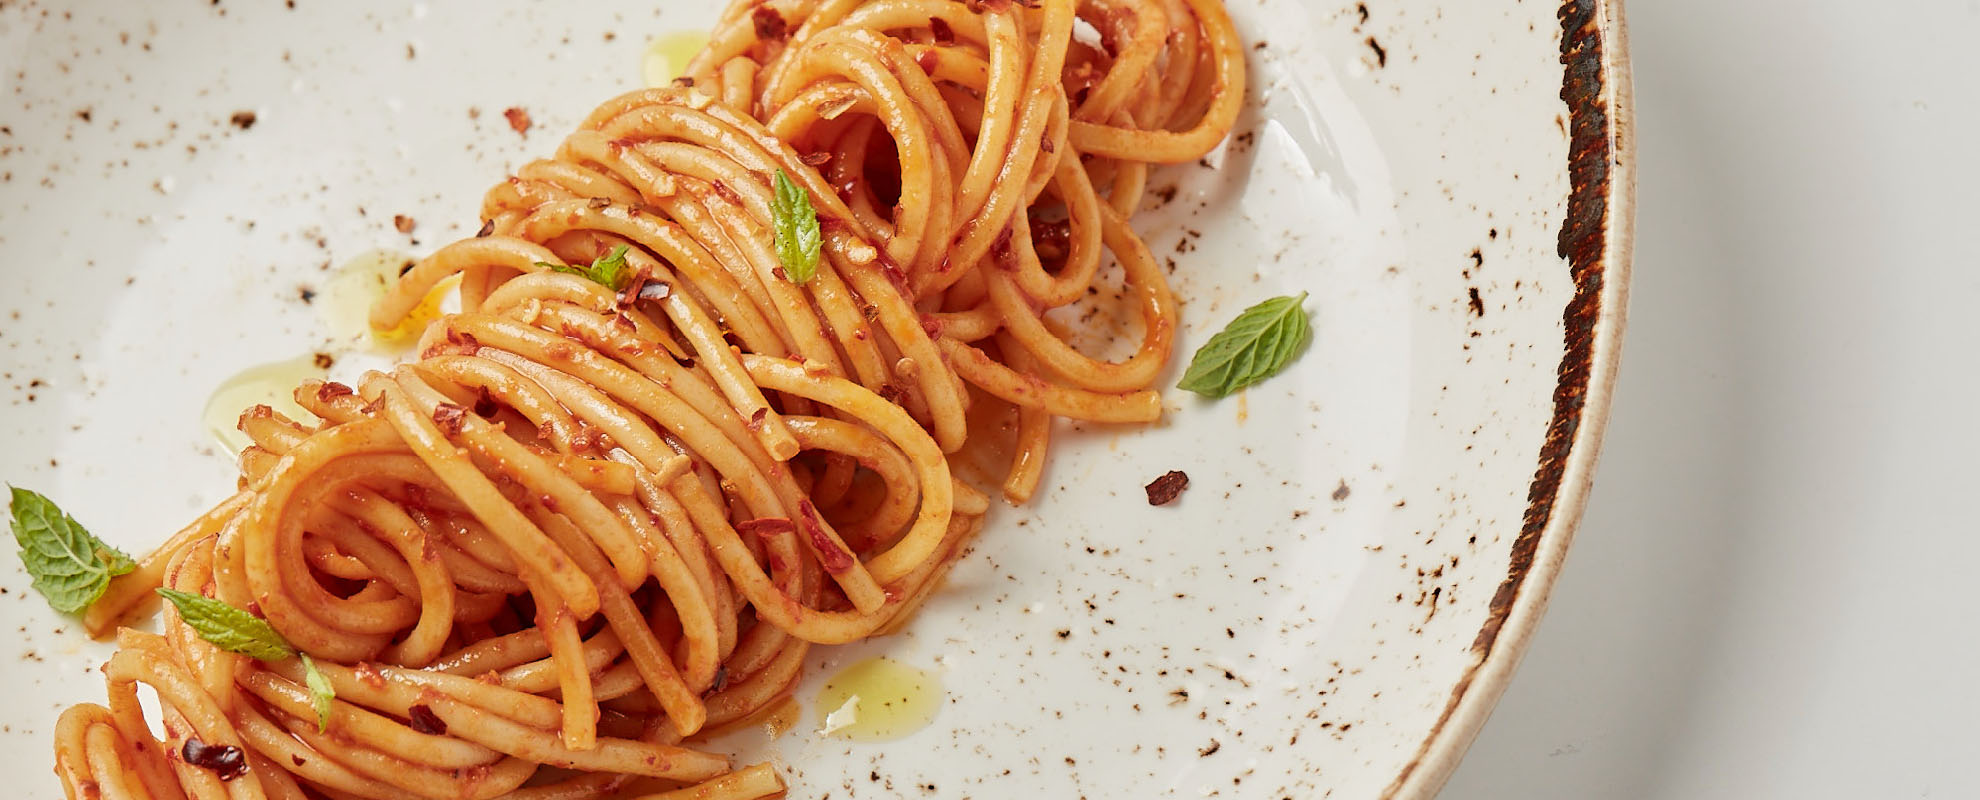 Spaghetti, aglio, olio, mentuccia e 'nduja